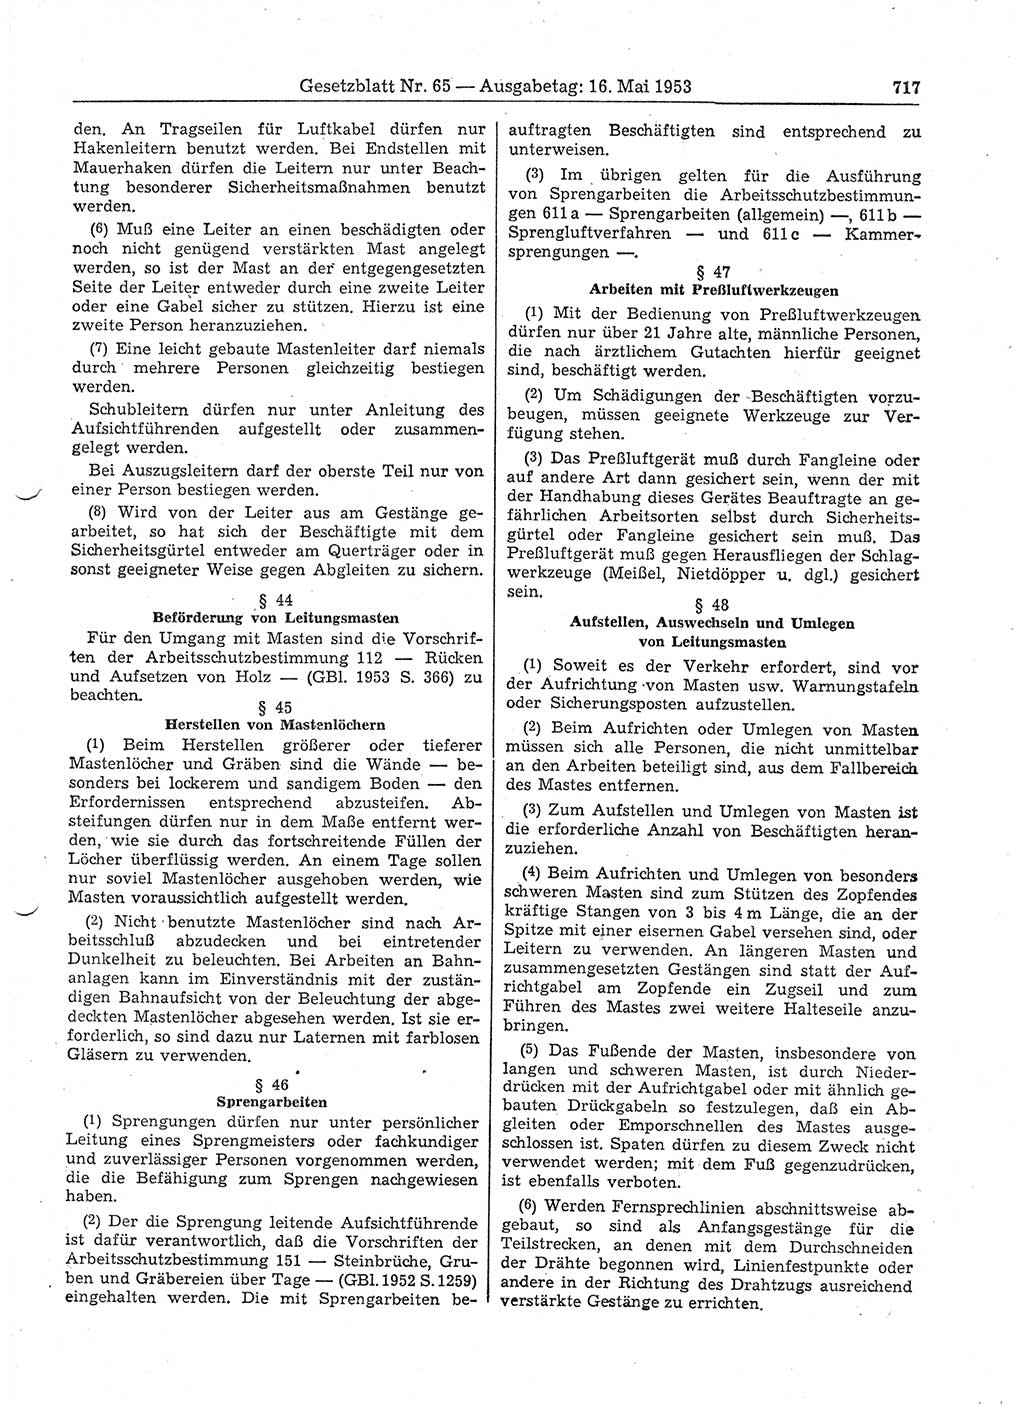 Gesetzblatt (GBl.) der Deutschen Demokratischen Republik (DDR) 1953, Seite 717 (GBl. DDR 1953, S. 717)